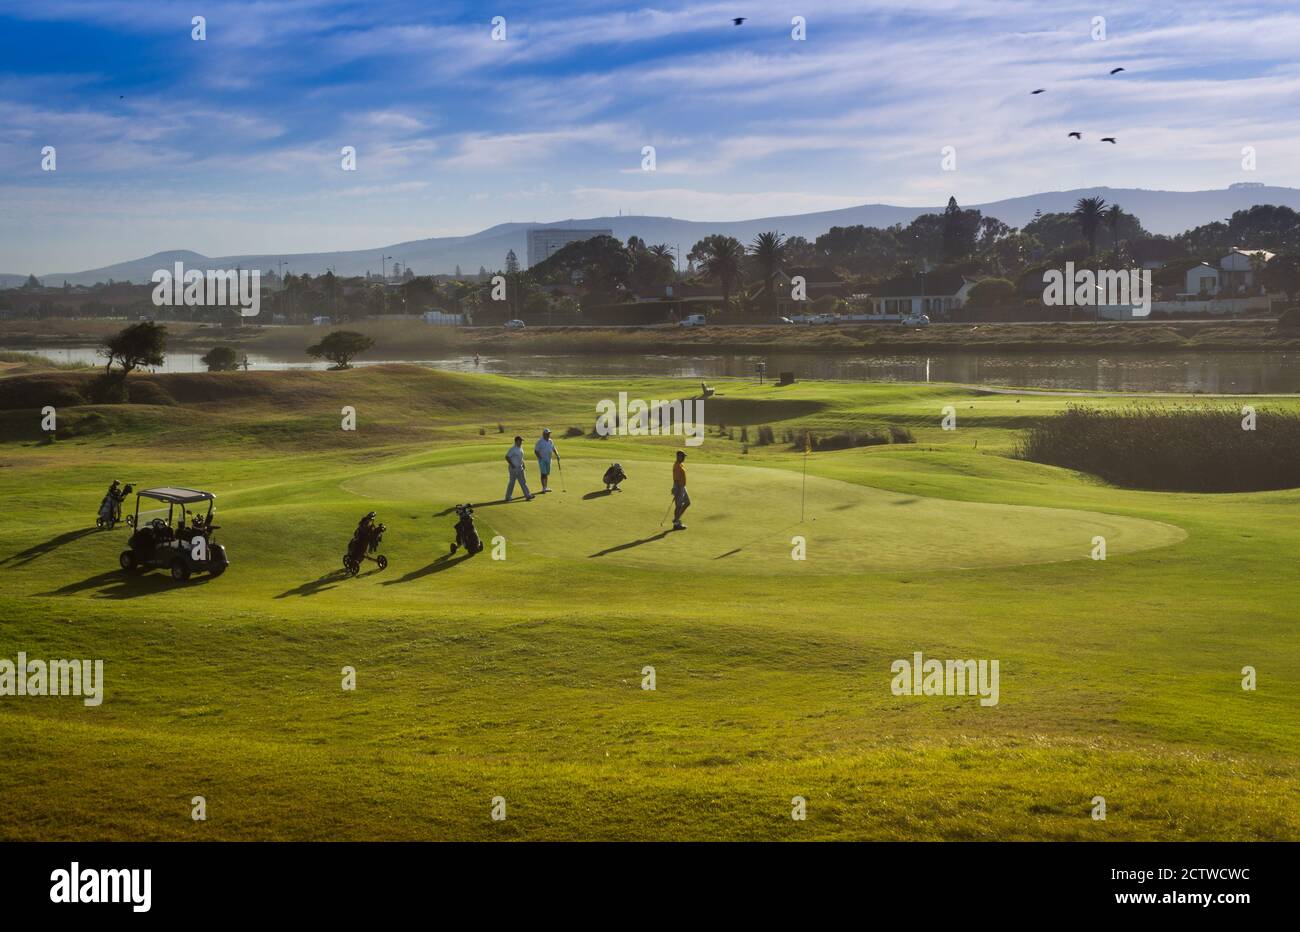 Golfer spielen Golf auf einer grünen Wiese mit einer Lagune im Hintergrund,  Kapstadt, Südafrika Stockfotografie - Alamy